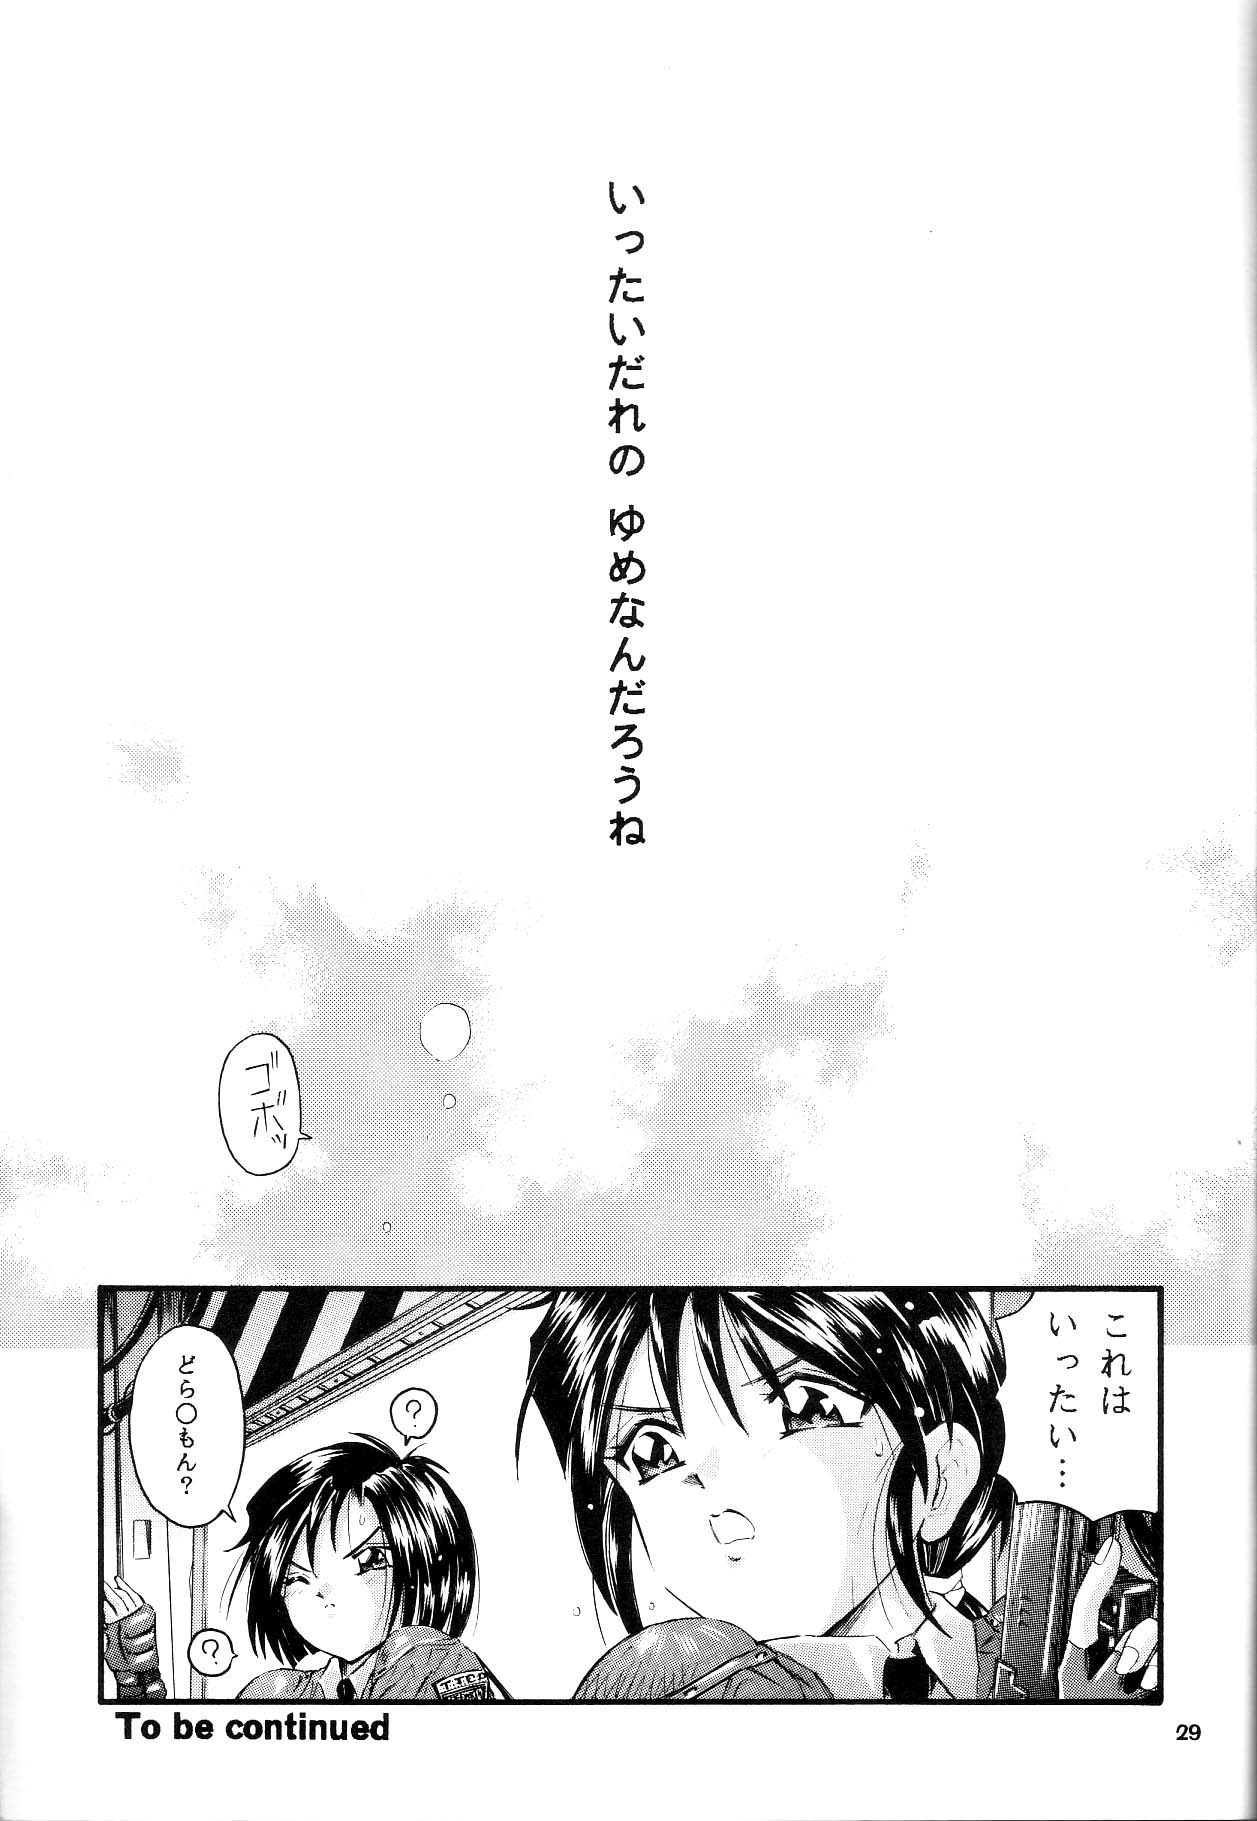 [Takitate] Than Para (Ah! Megami-sama/Ah! My Goddess) page 28 full